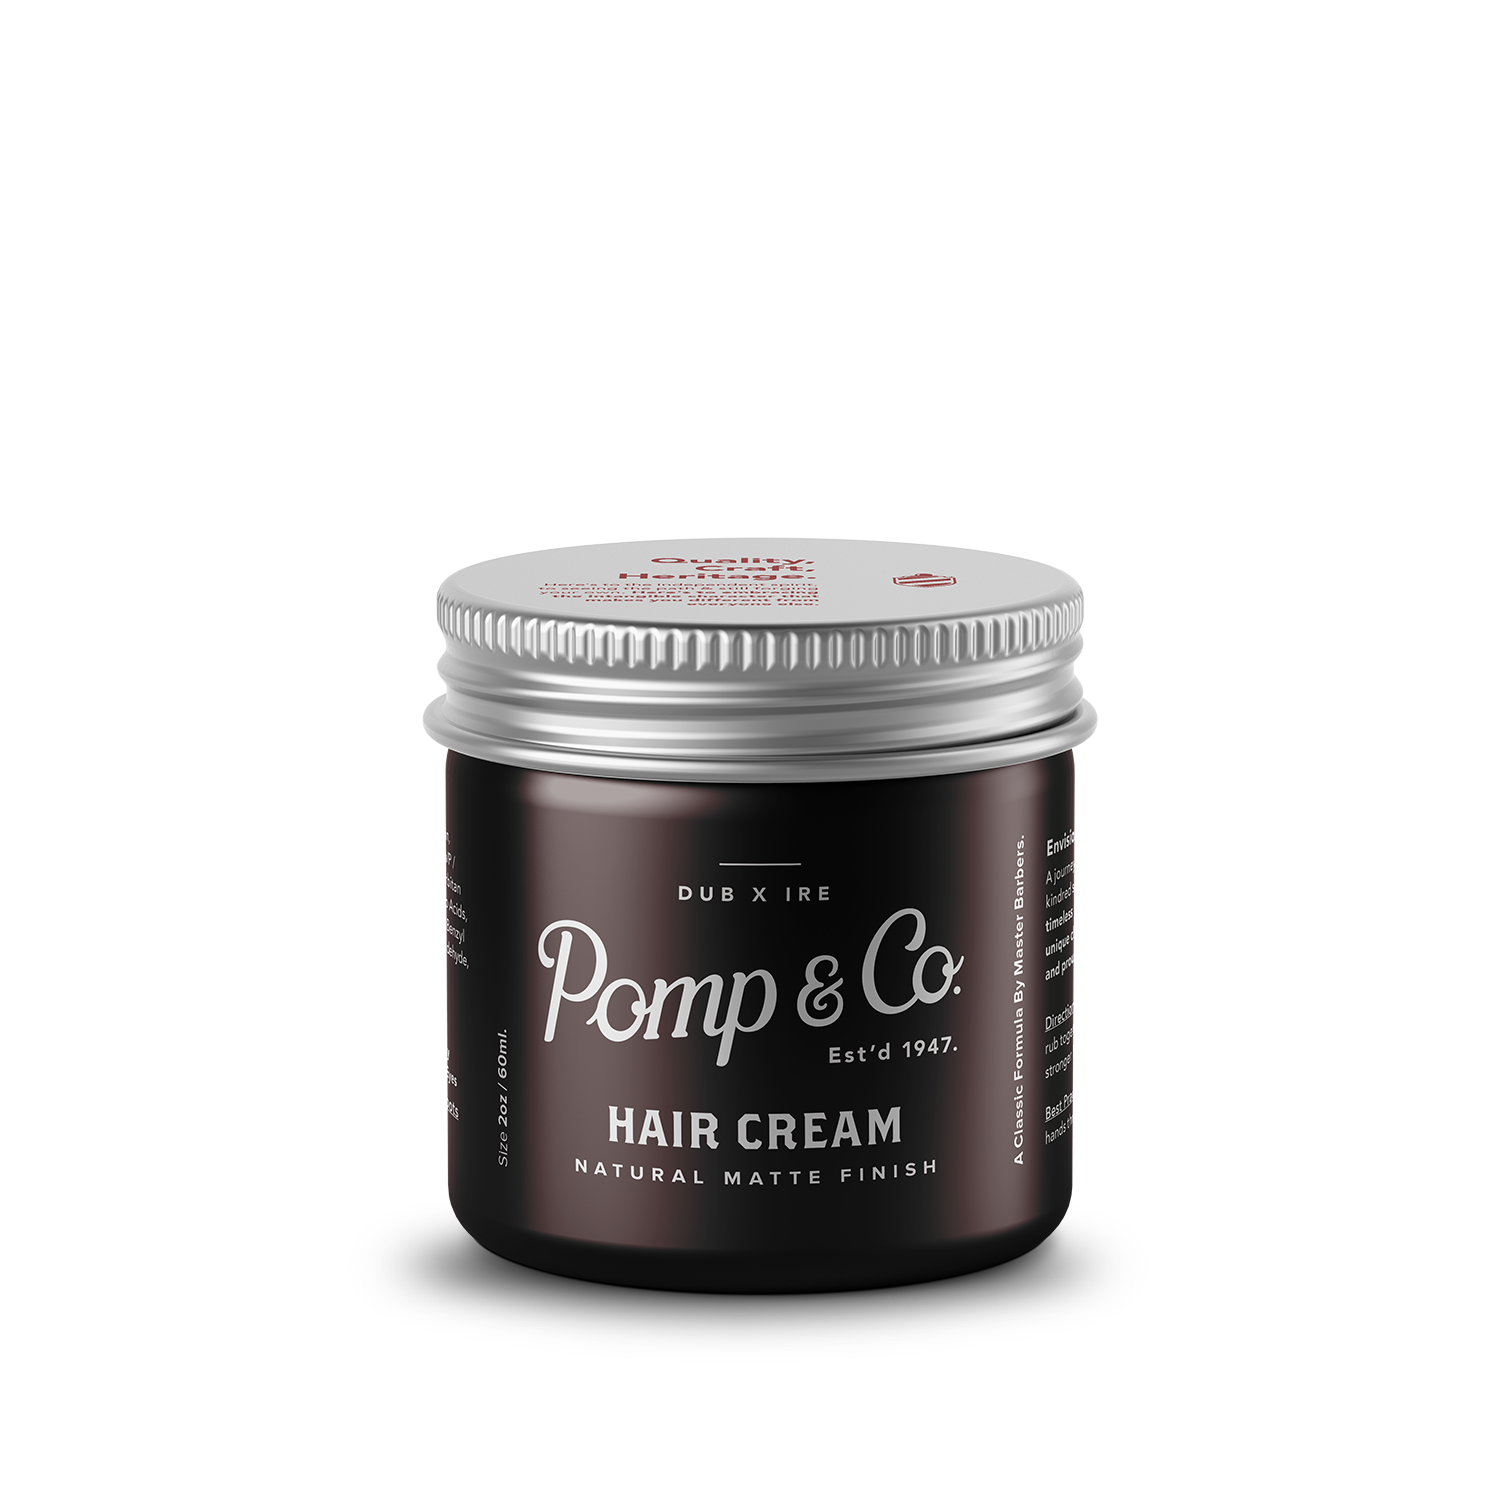 Hair Cream 60ml for Men - €21.00 | Pomp & Co.